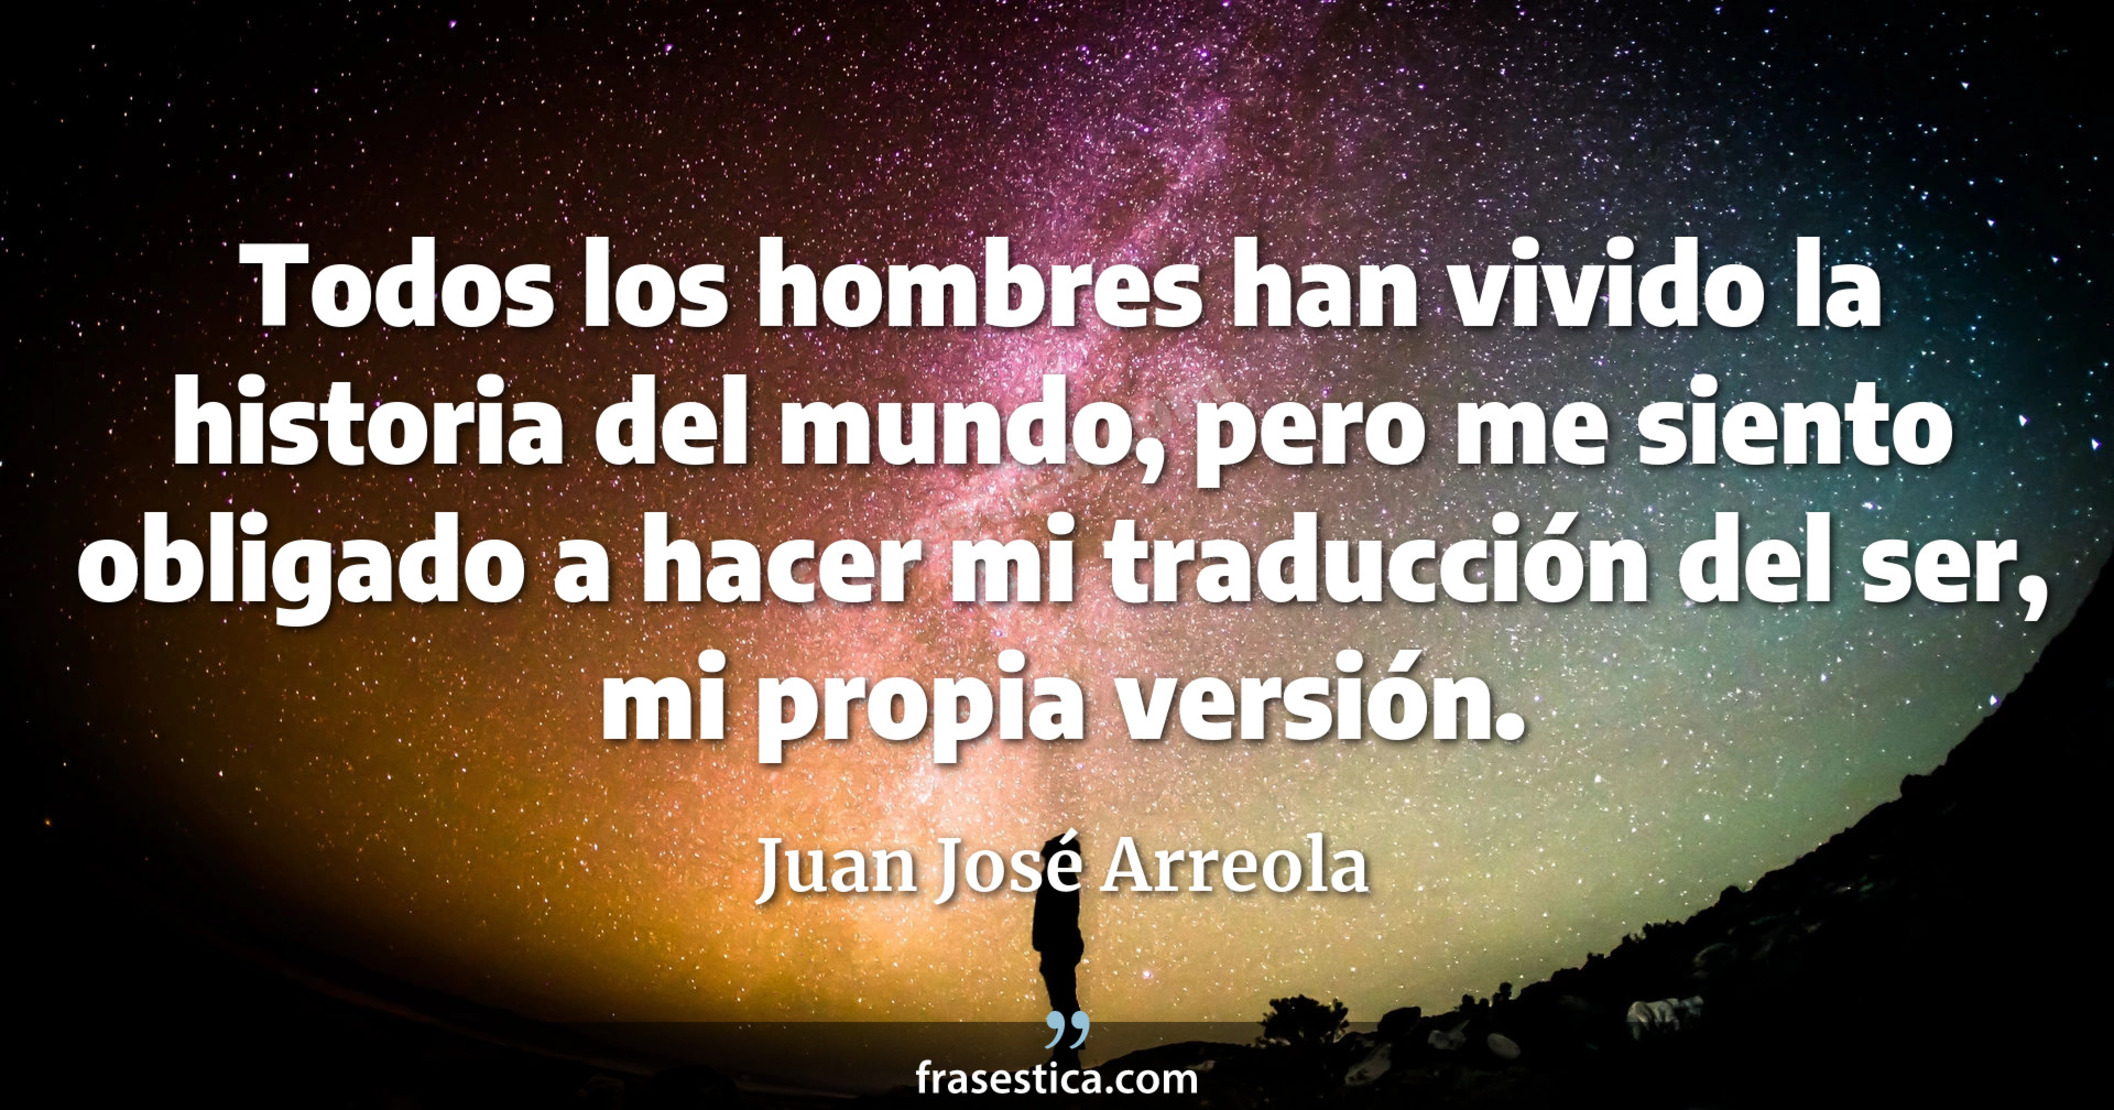 Todos los hombres han vivido la historia del mundo, pero me siento obligado a hacer mi traducción del ser, mi propia versión. - Juan José Arreola